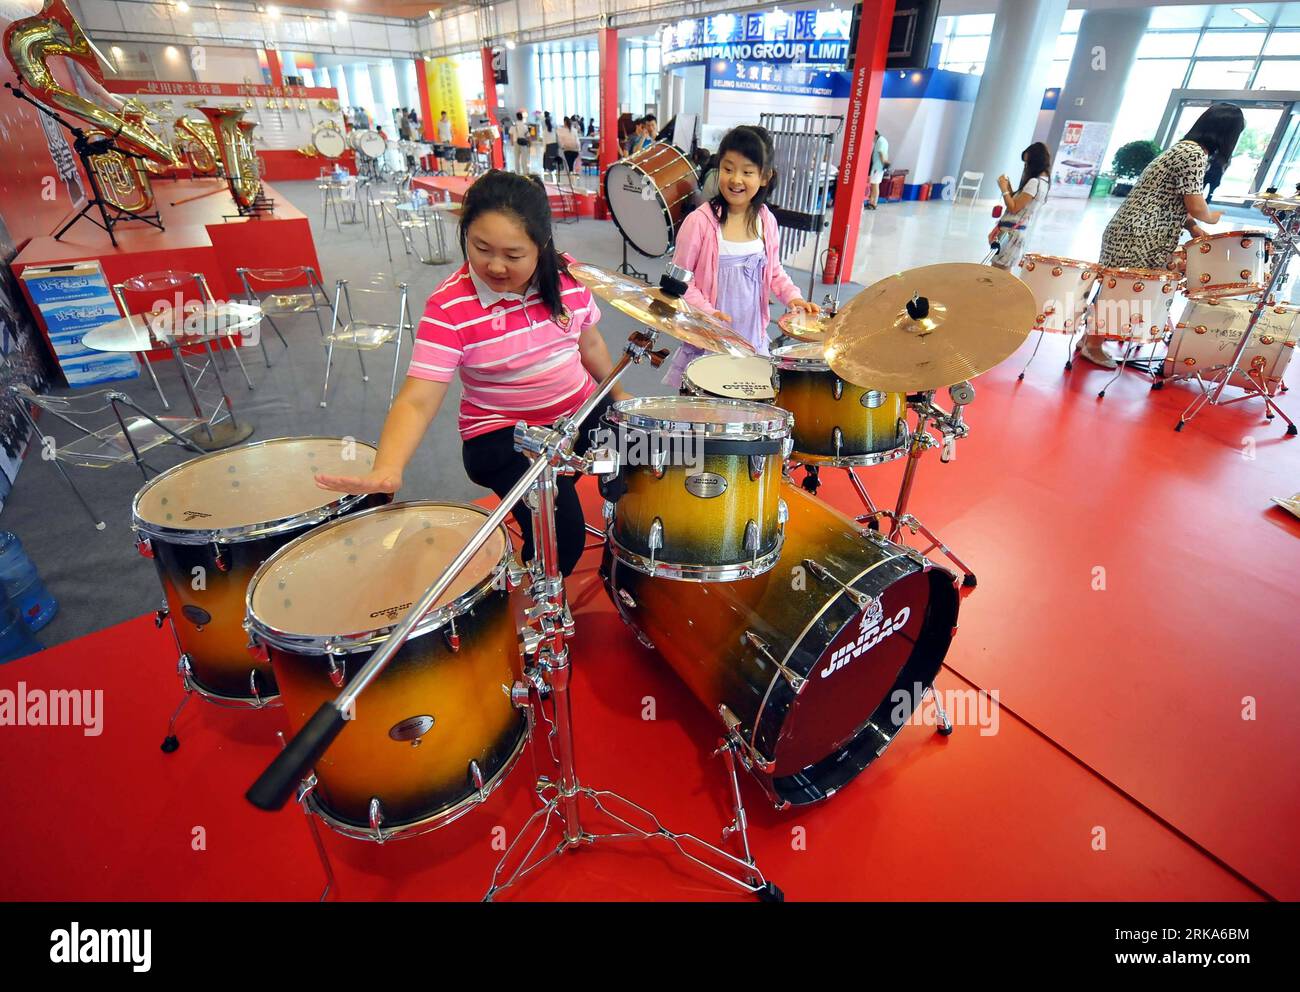 Bildnummer : 54276743 Datum : 04.08.2010 Copyright : imago/Xinhua deux  enfants expérimentent les instruments de percussion au Beijing Music Show  2010 à Beijing, le 4 août 2010. Des dizaines d'entreprises nationales et